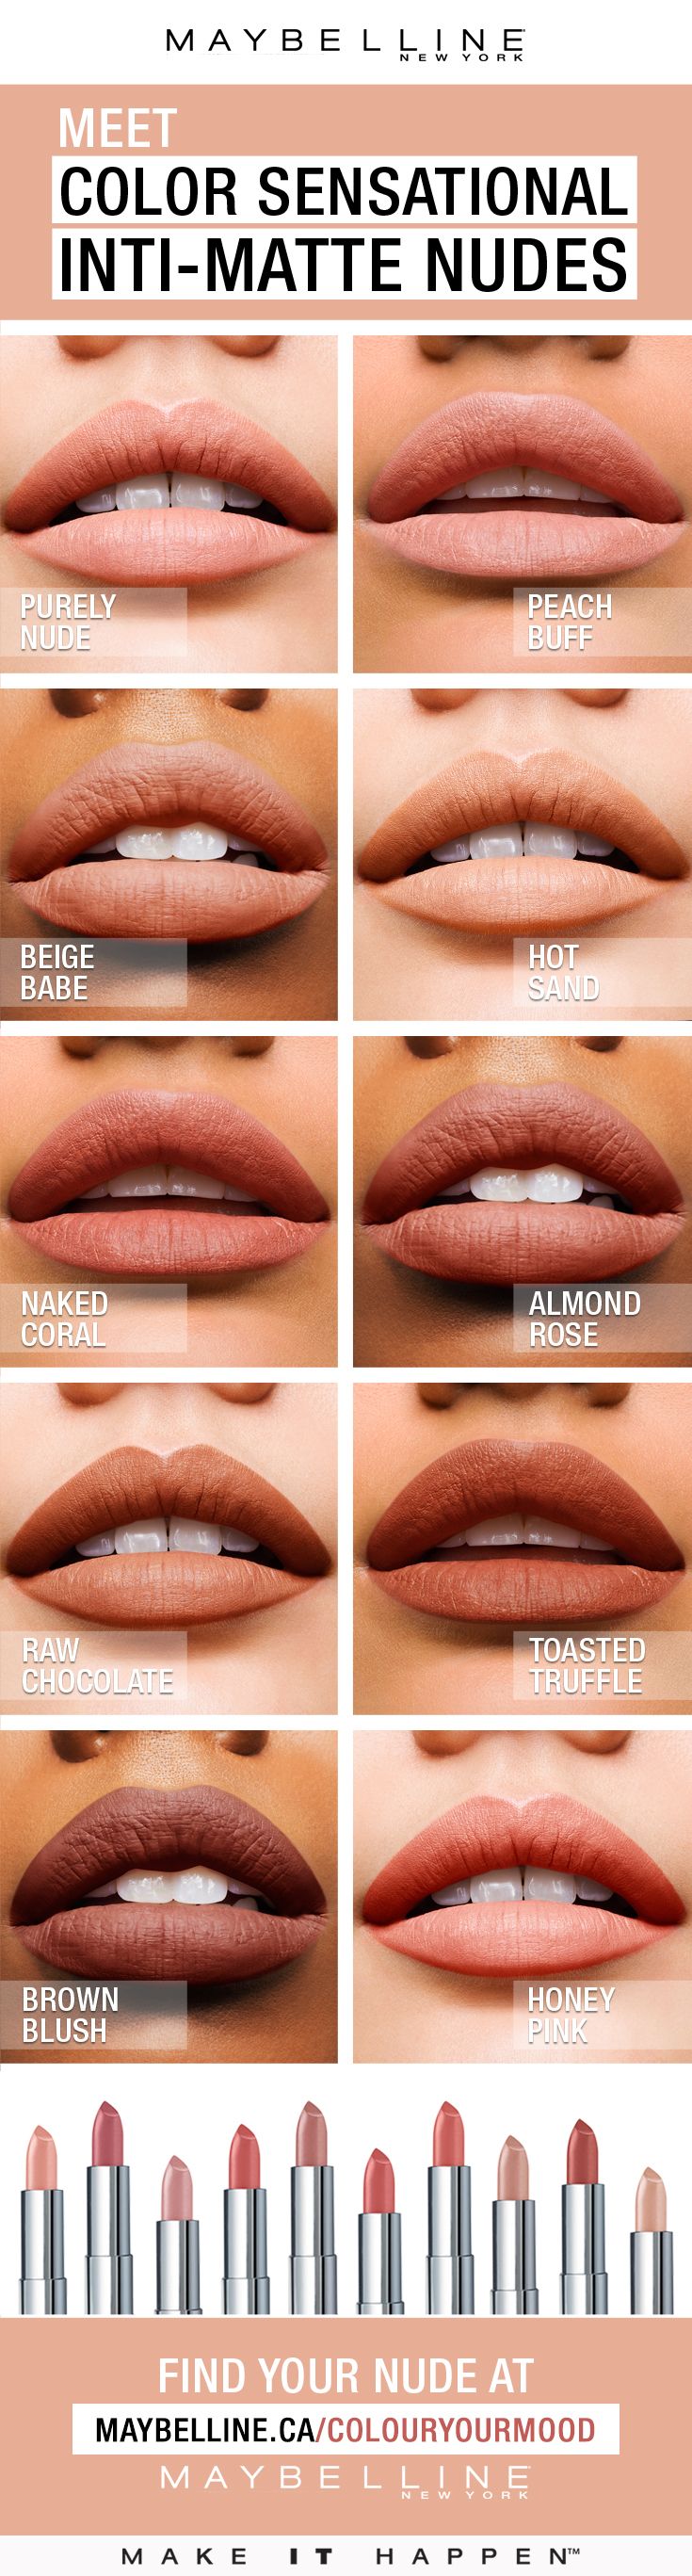 Color Sensational® Inti-Matte Nude lipstick features warm, golden pigments that...